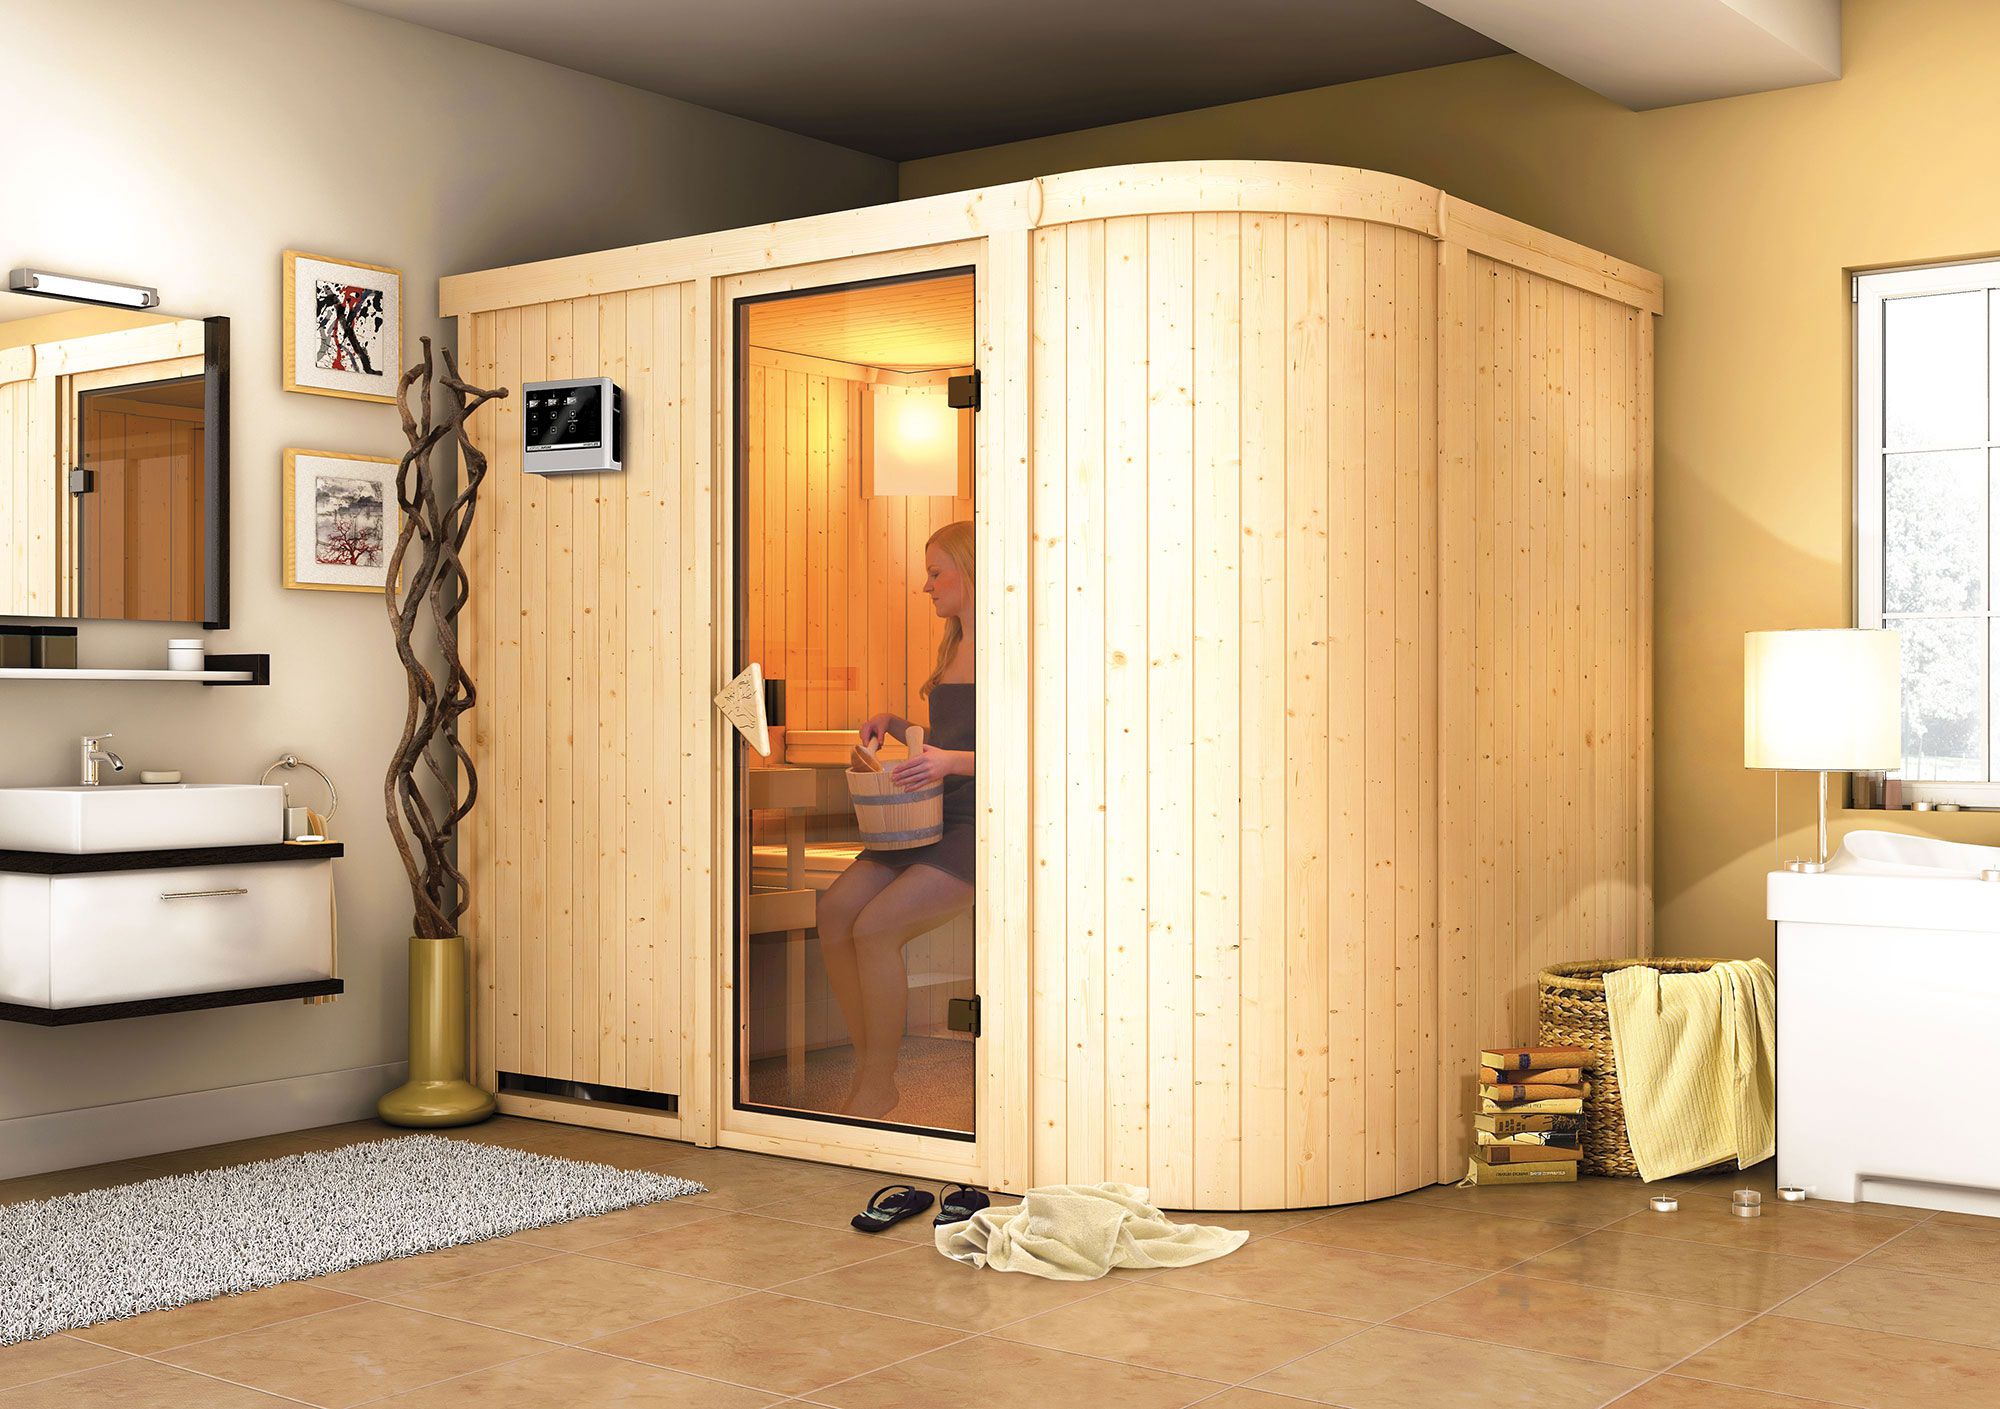 Sauna "Einar" SET met bronskleurige deur & kachel externe regeling easy 9 kW - 231 x 170 x 198 cm (B x D x H)